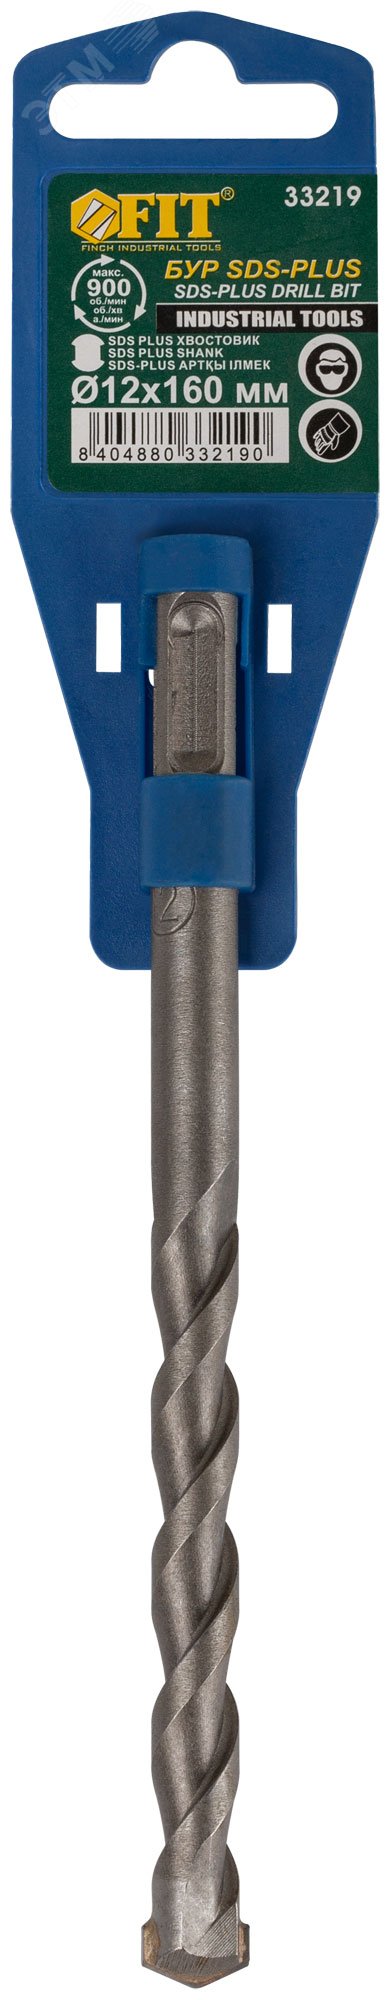 Бур по бетону SDS PLUS (синий корпус) 12x160 мм 33219 FIT - превью 2